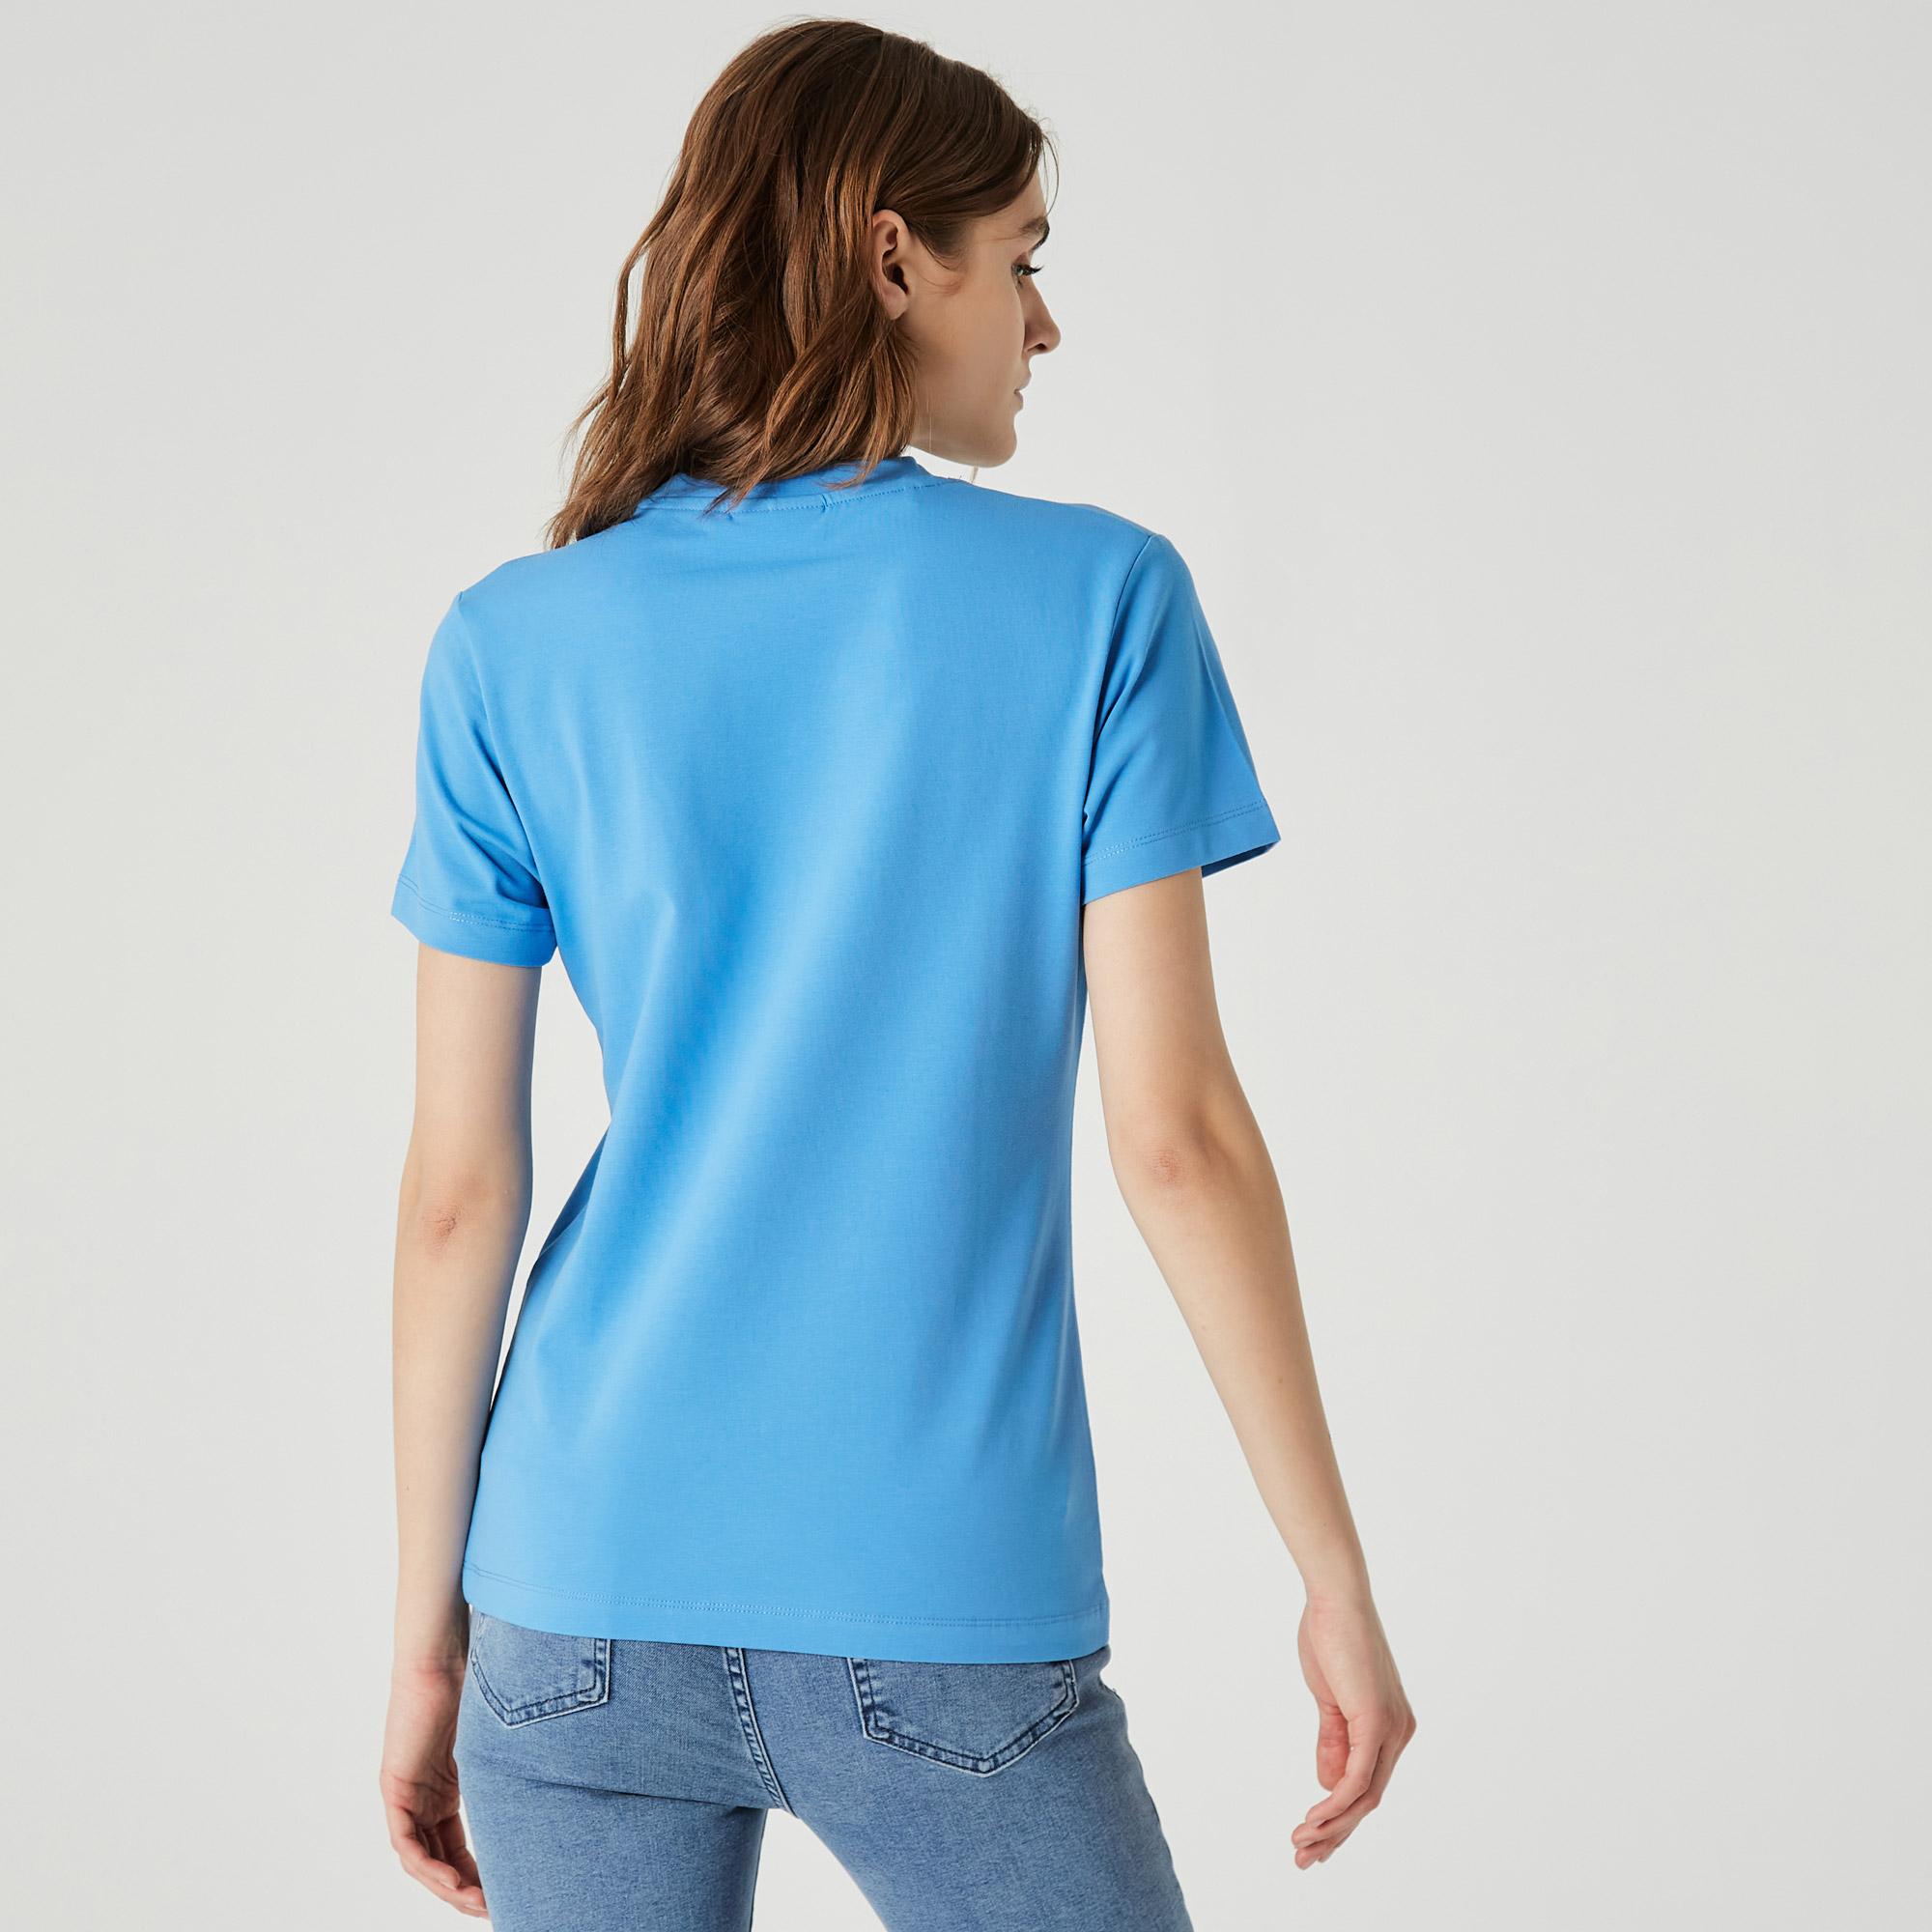 Lacoste Kadın Slim Fit Bisiklet Yaka Baskılı Mavi T-Shirt. 3